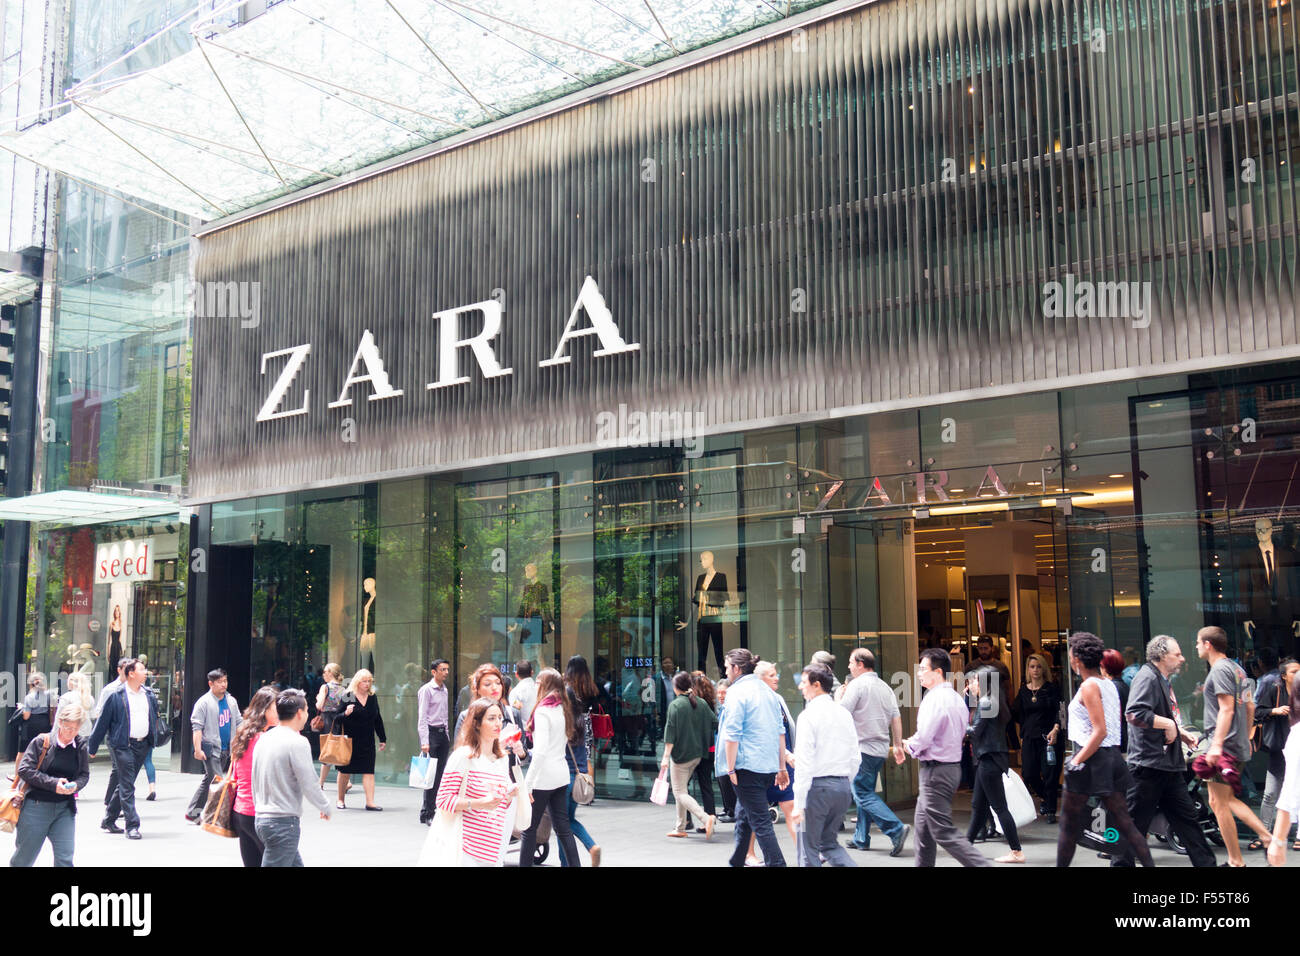 Spanish retailer Zara clothing store in 